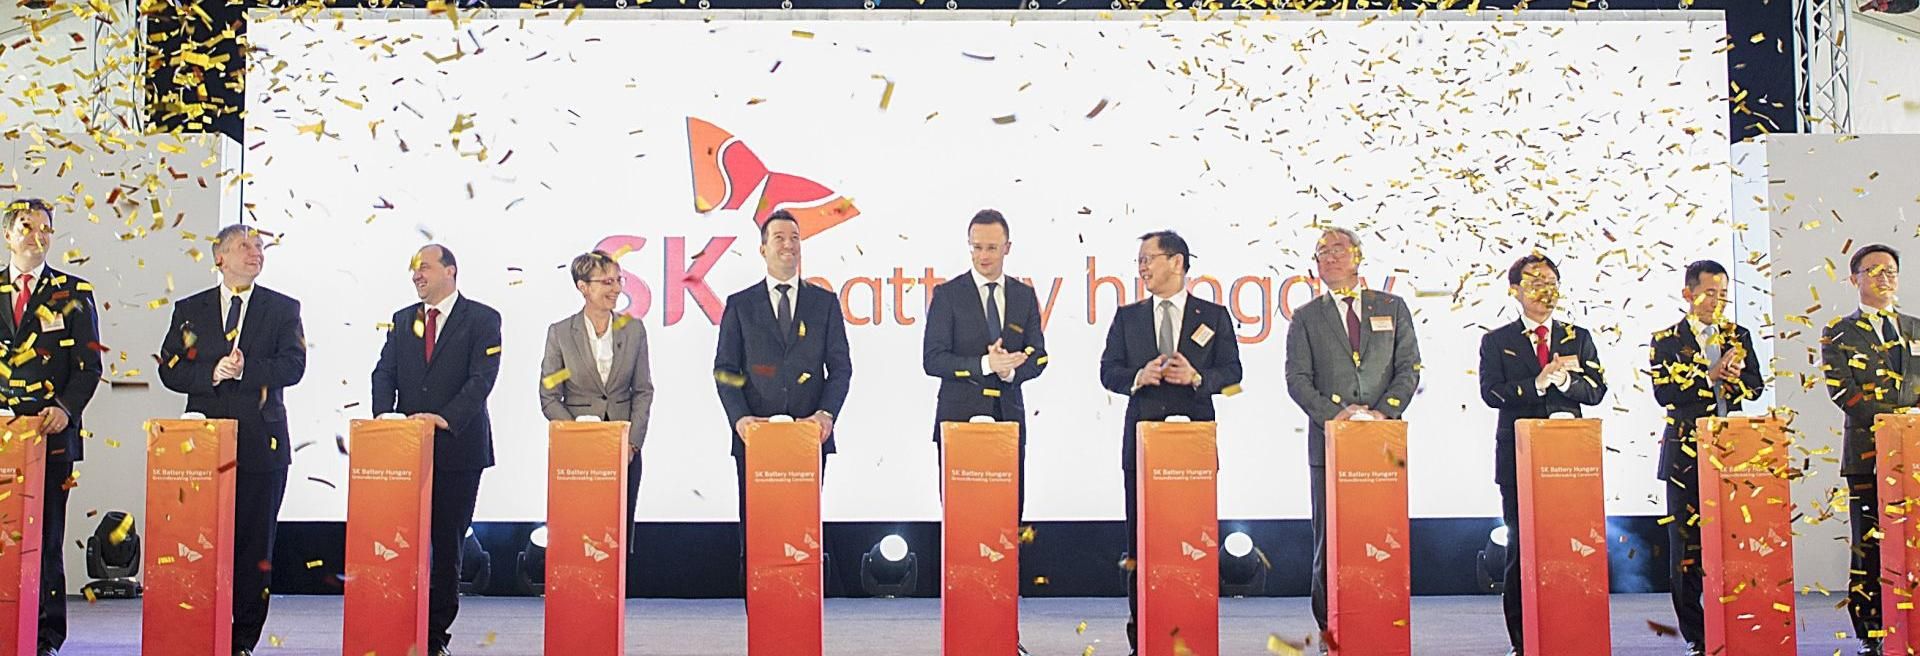 Második európai üzemét is Magyarországon létesíti az SK Innovation